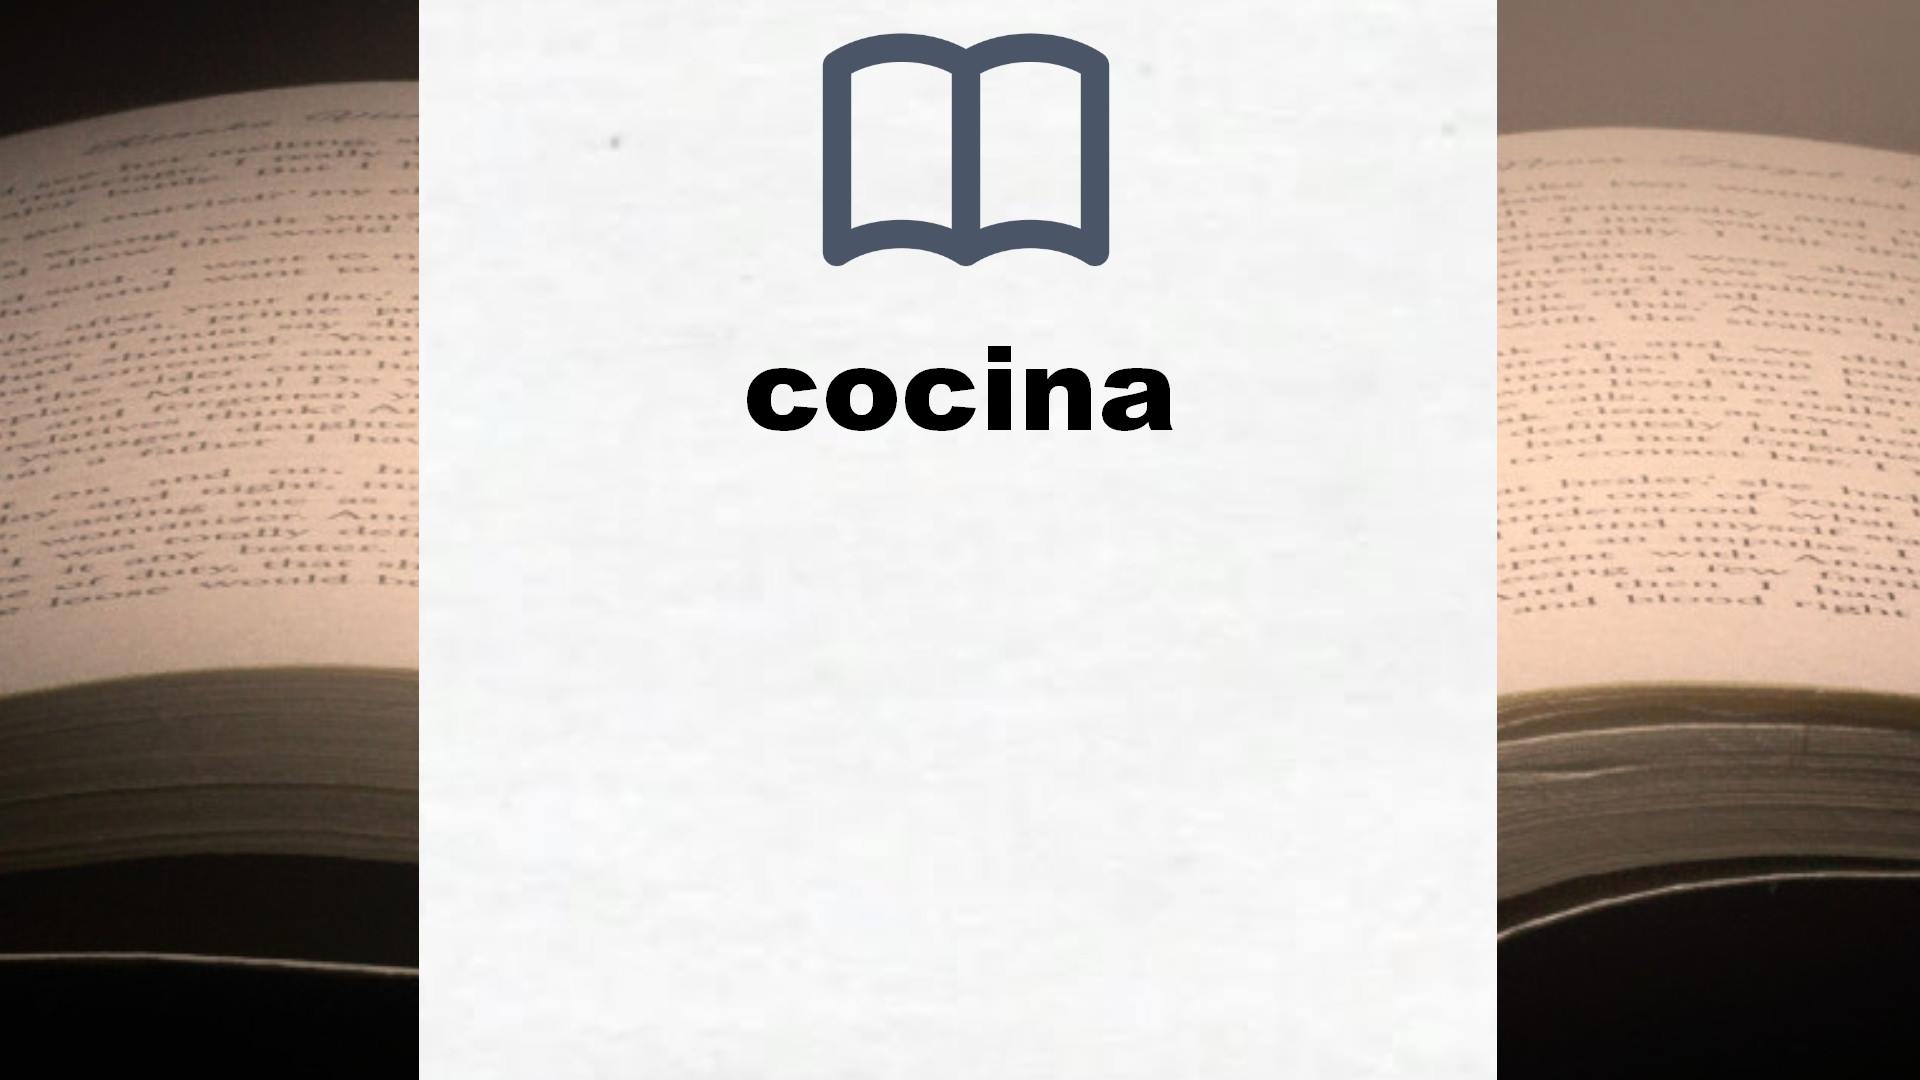 Libros sobre cocina